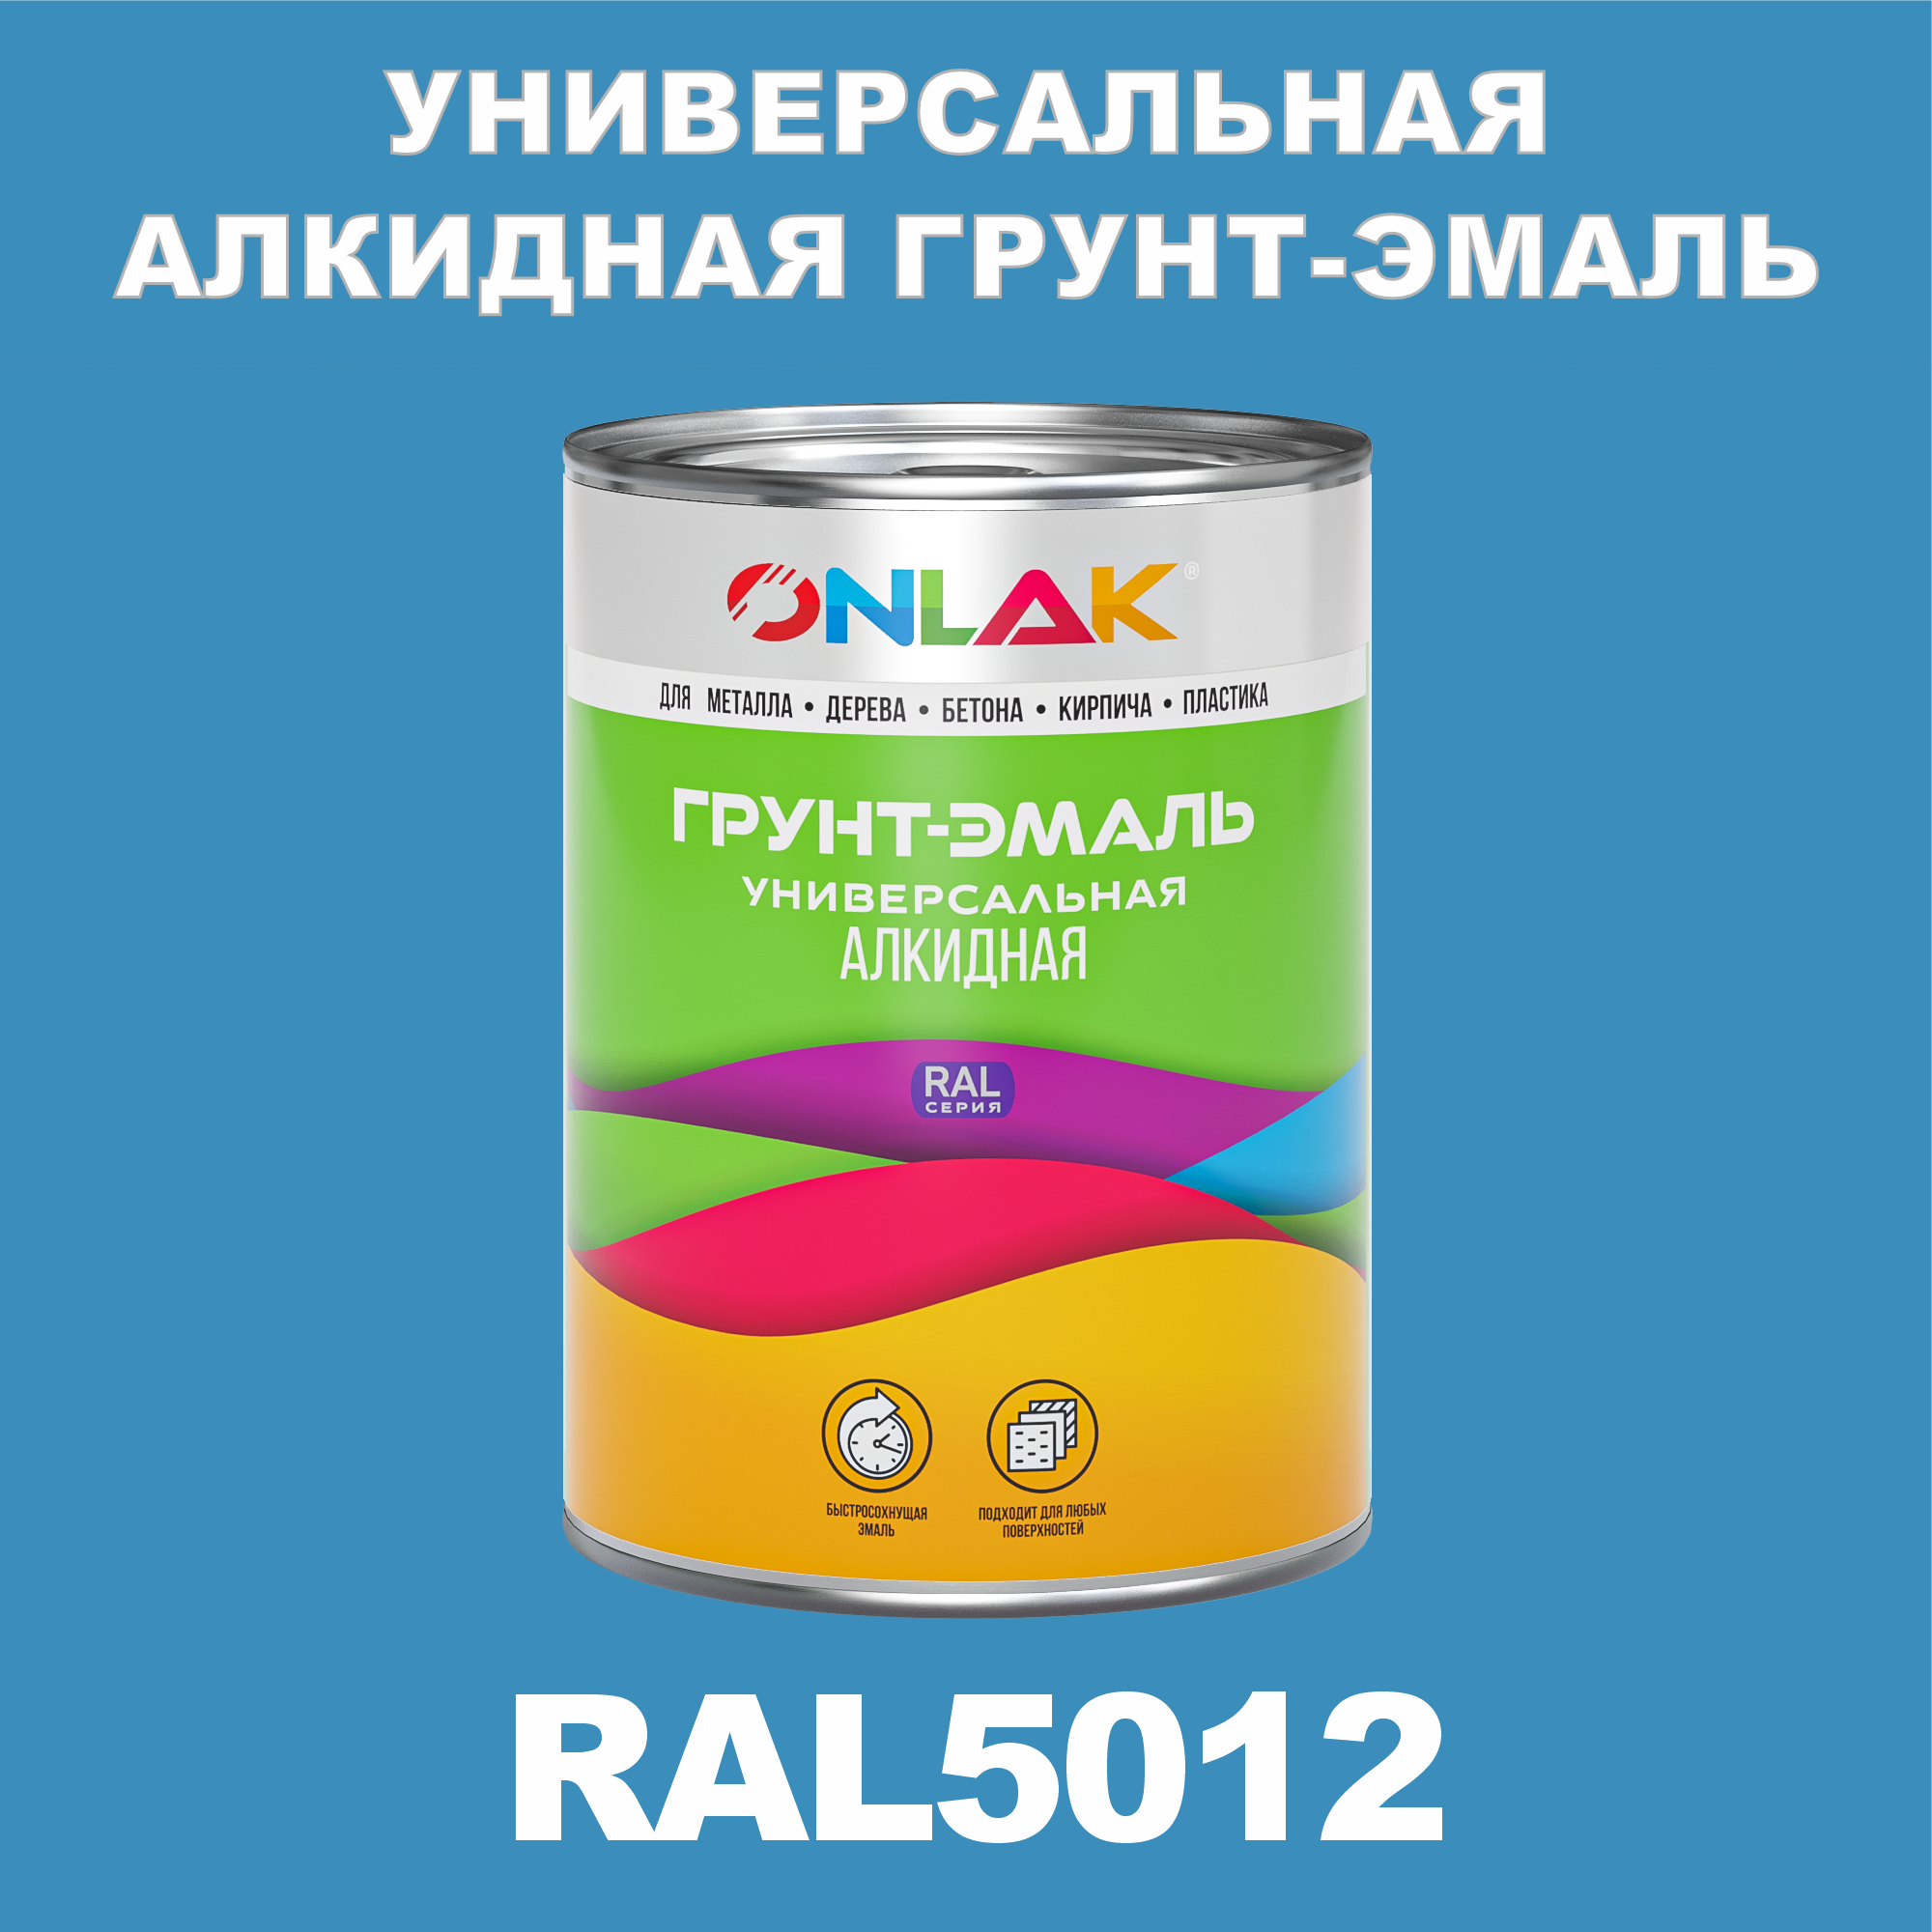 Грунт-эмаль ONLAK 1К RAL5012 антикоррозионная алкидная по металлу по ржавчине 1 кг грунт эмаль skladno по ржавчине алкидная желтая 1 8 кг